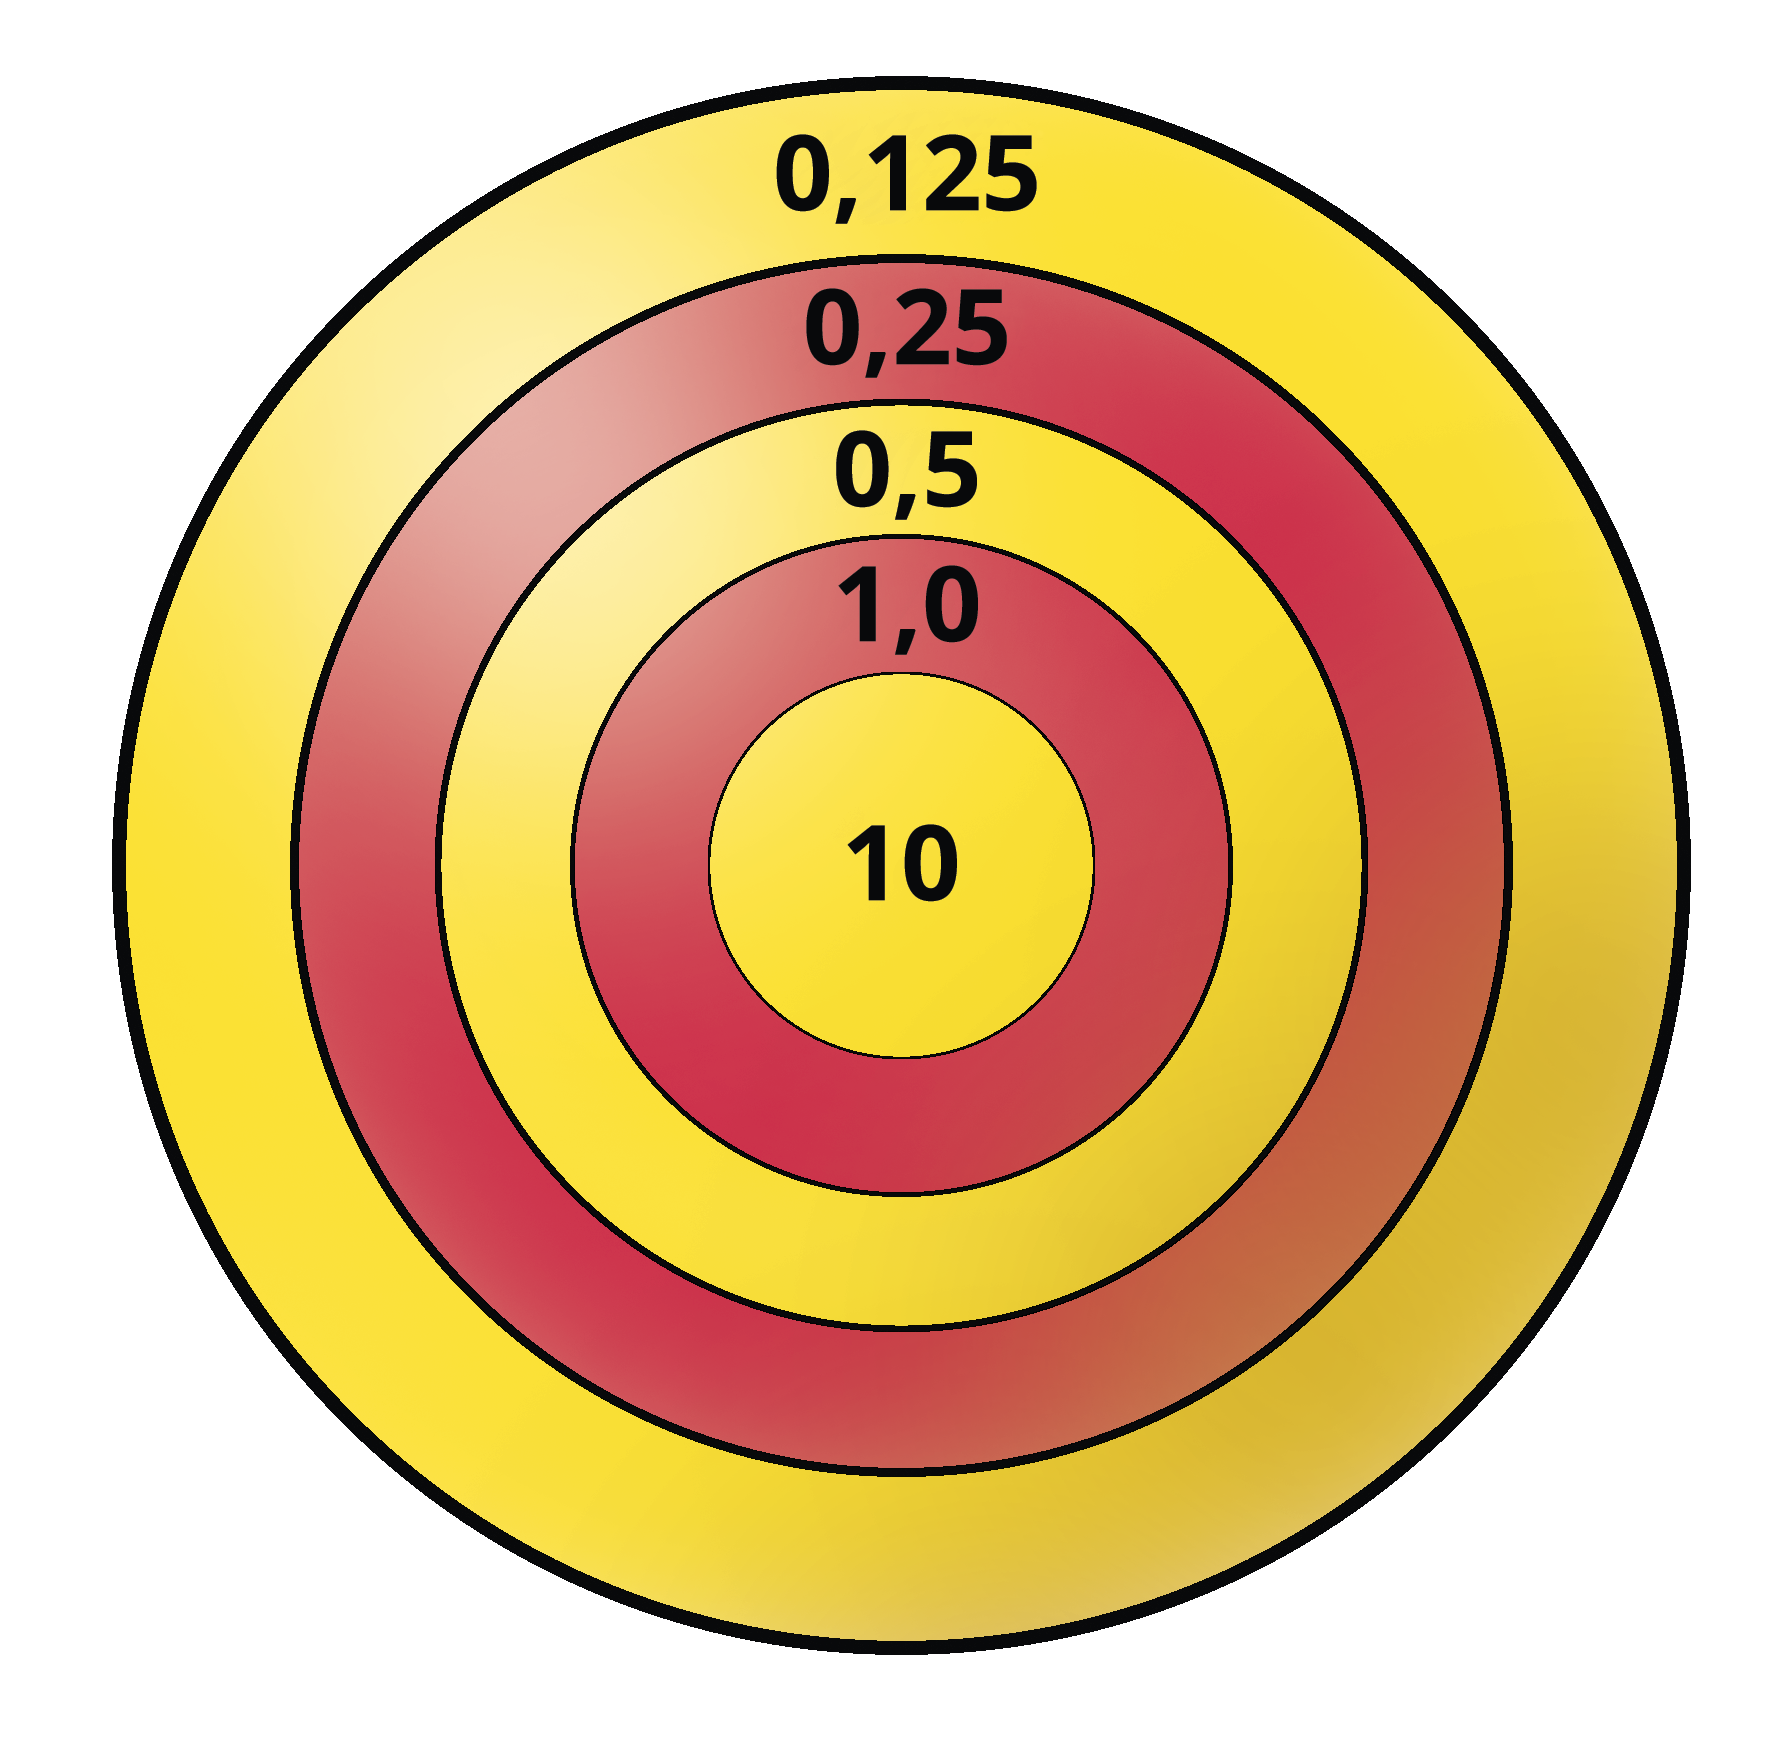 Ilustração. Alvo circular com faixas amarelas e vermelhas. Faixas de fora para dentro com os números: 0 vírgula 125; 0 vírgula 25; 0 vírgula 5; 1 vírgula 0 e no centro 10.